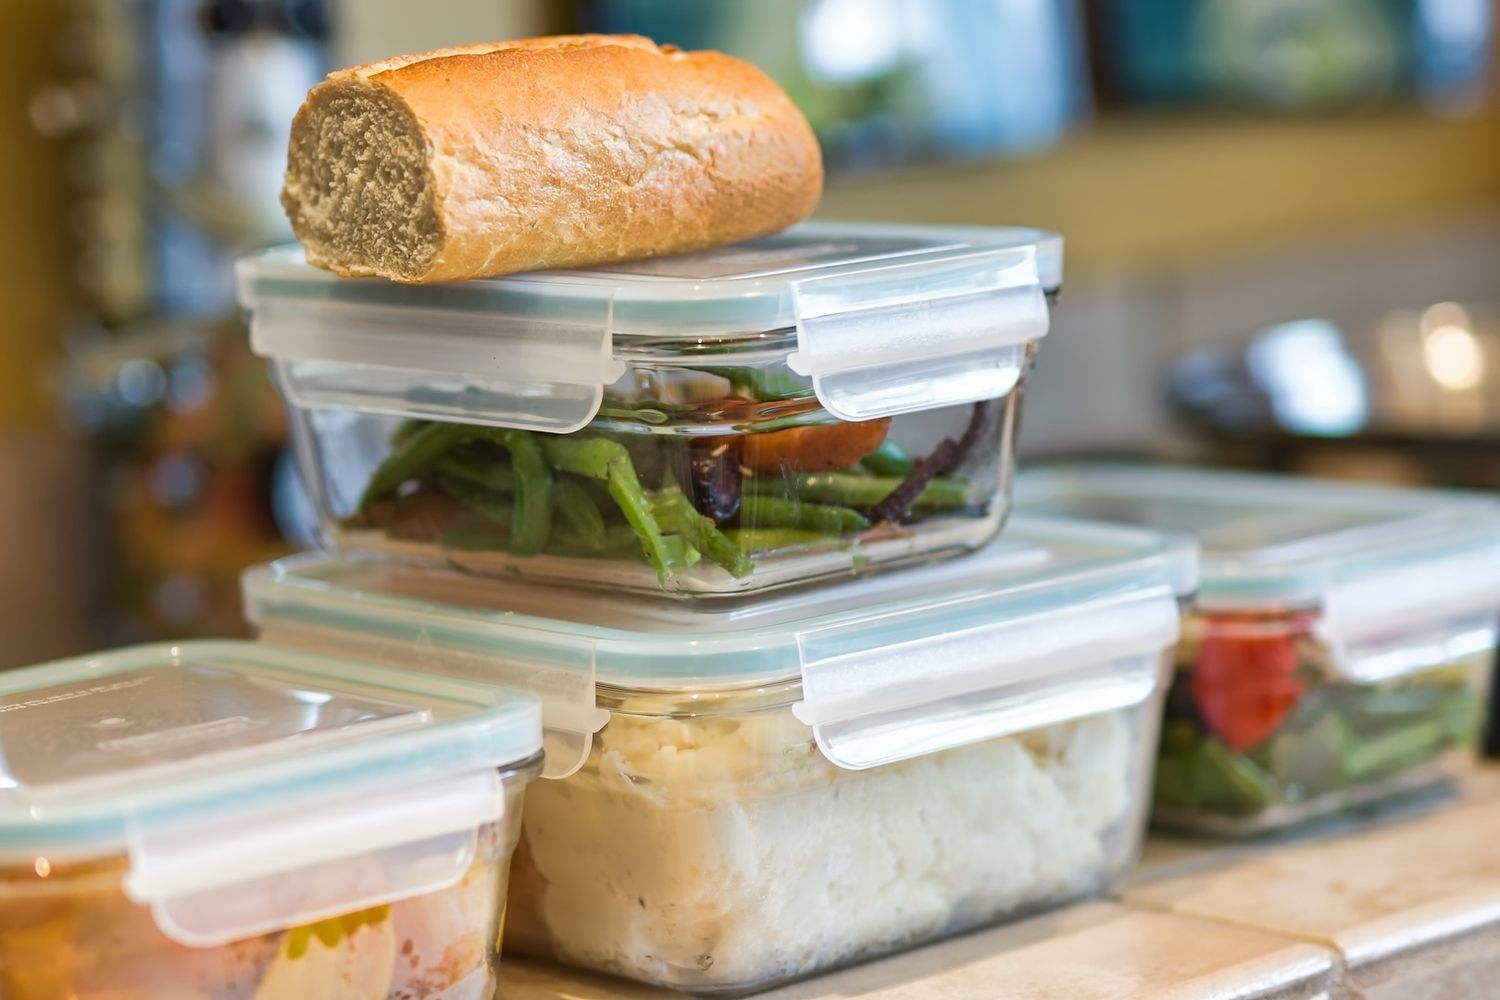 Stapel containers met overgebleven voedsel en brood